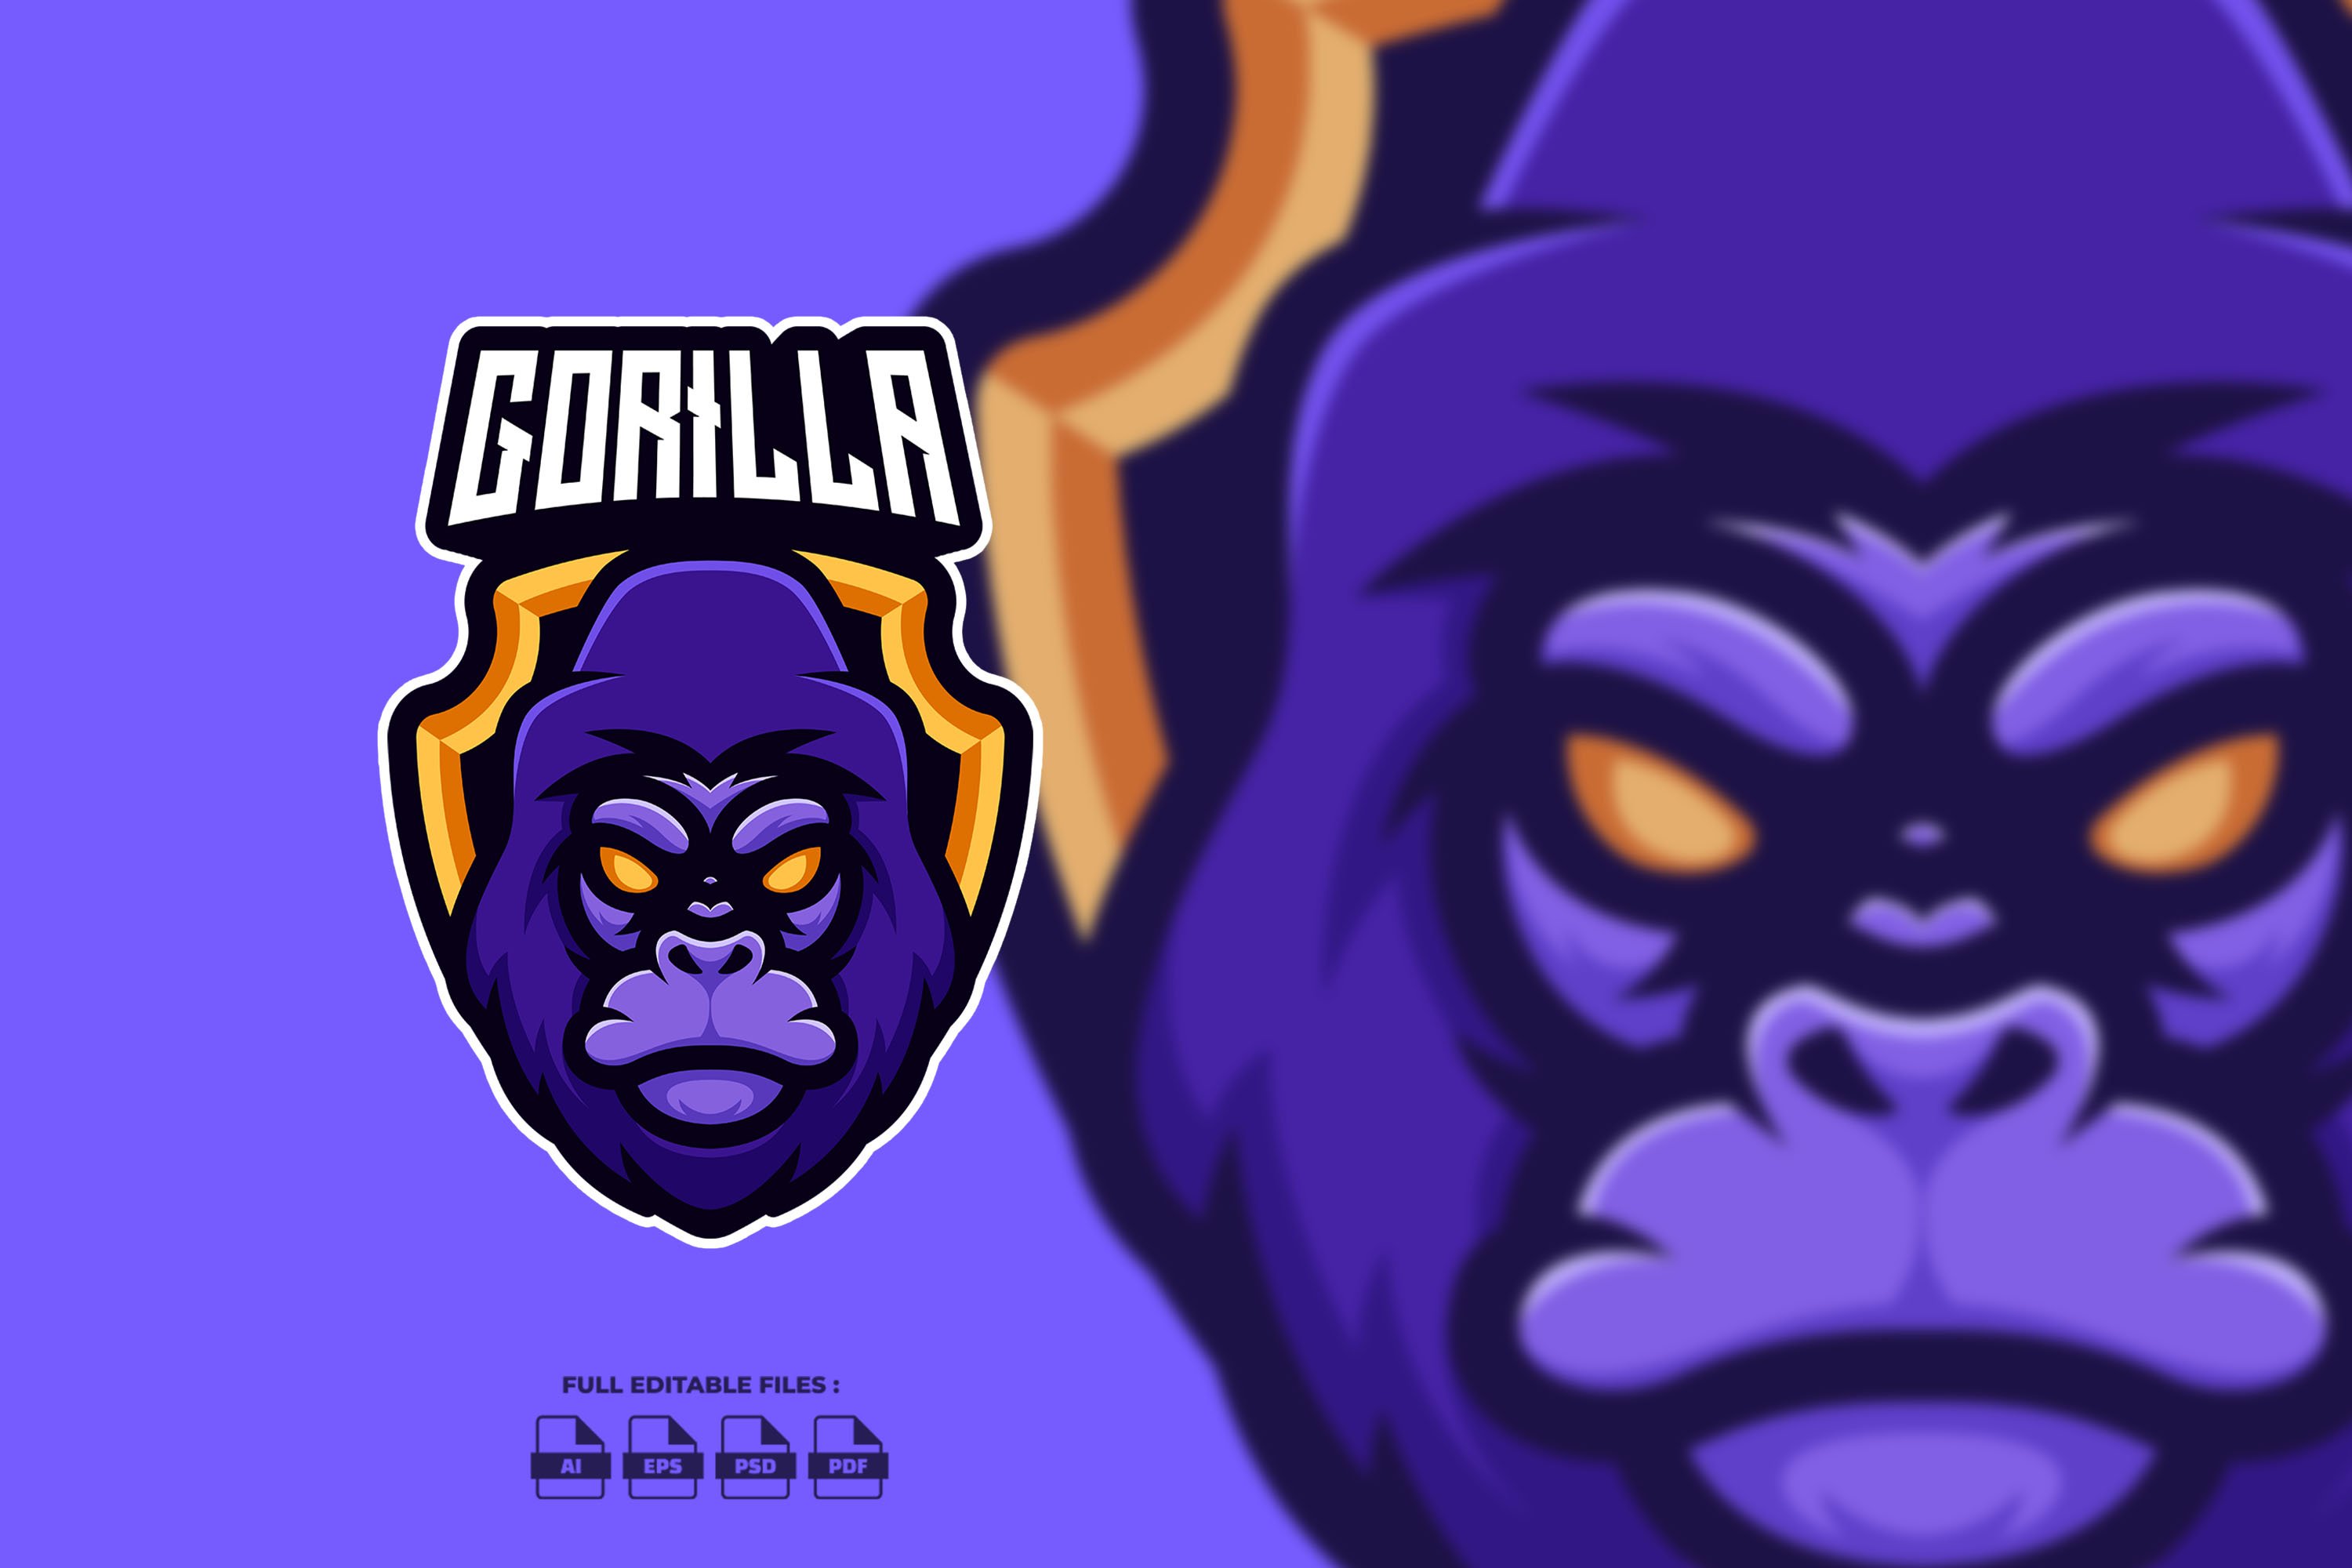 Purple Gorilla Esport Mascot Logo cover image.